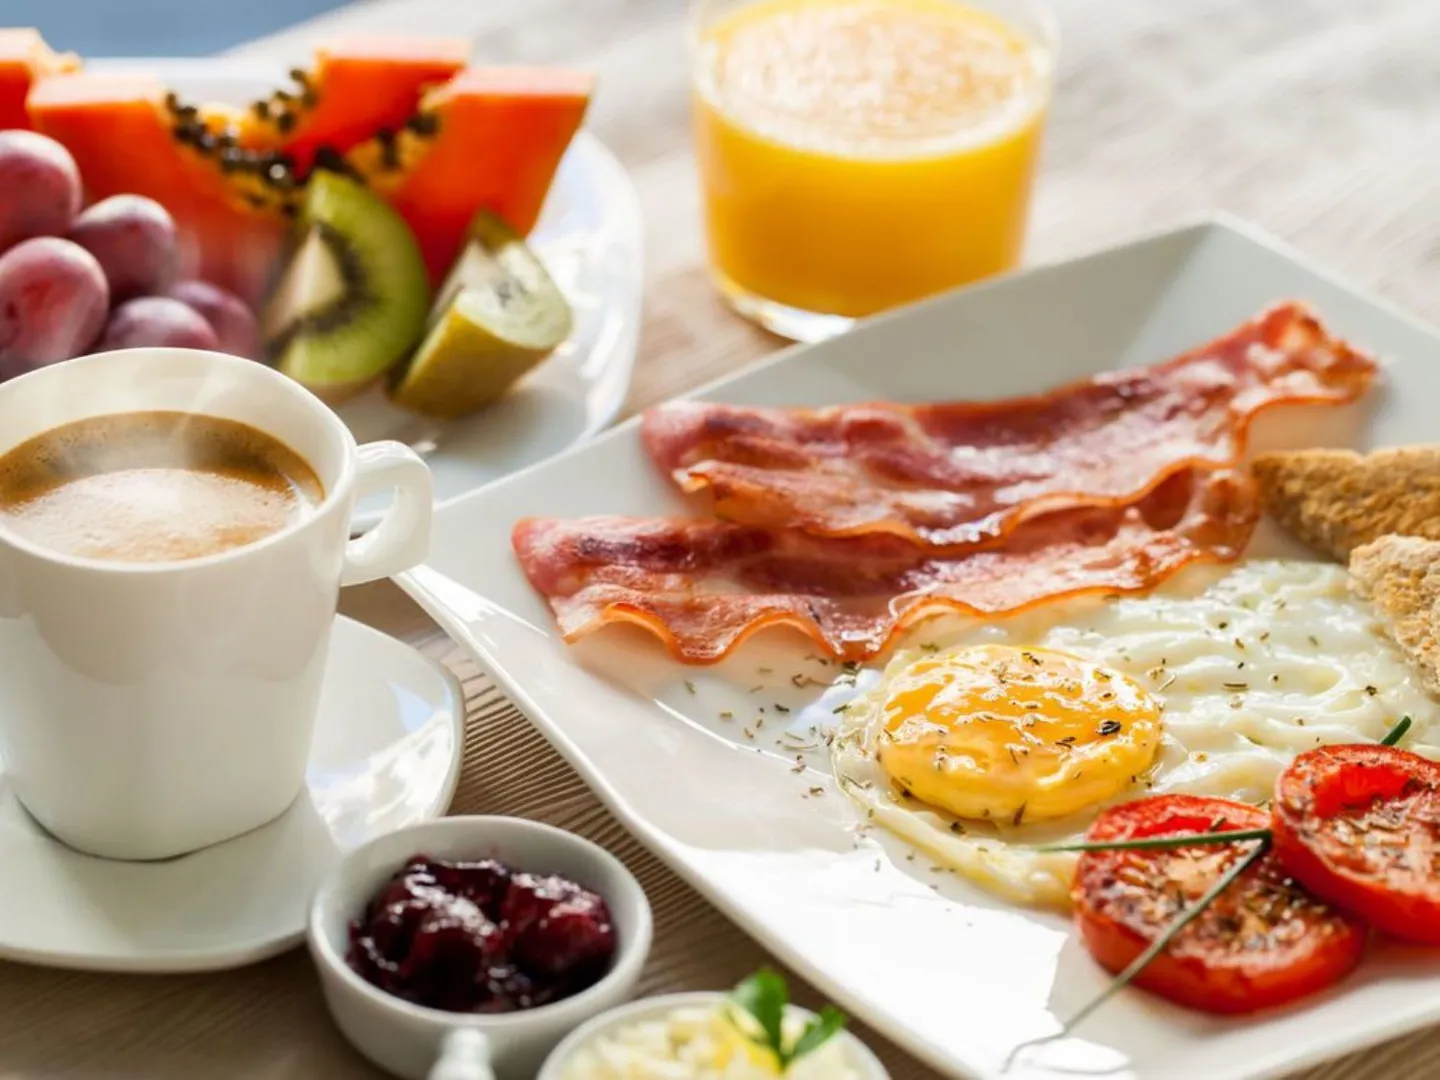 Завтрак каша, яичница/омлет, бекон, сырники, чай/кофе на выбор 150-250 руб/чел